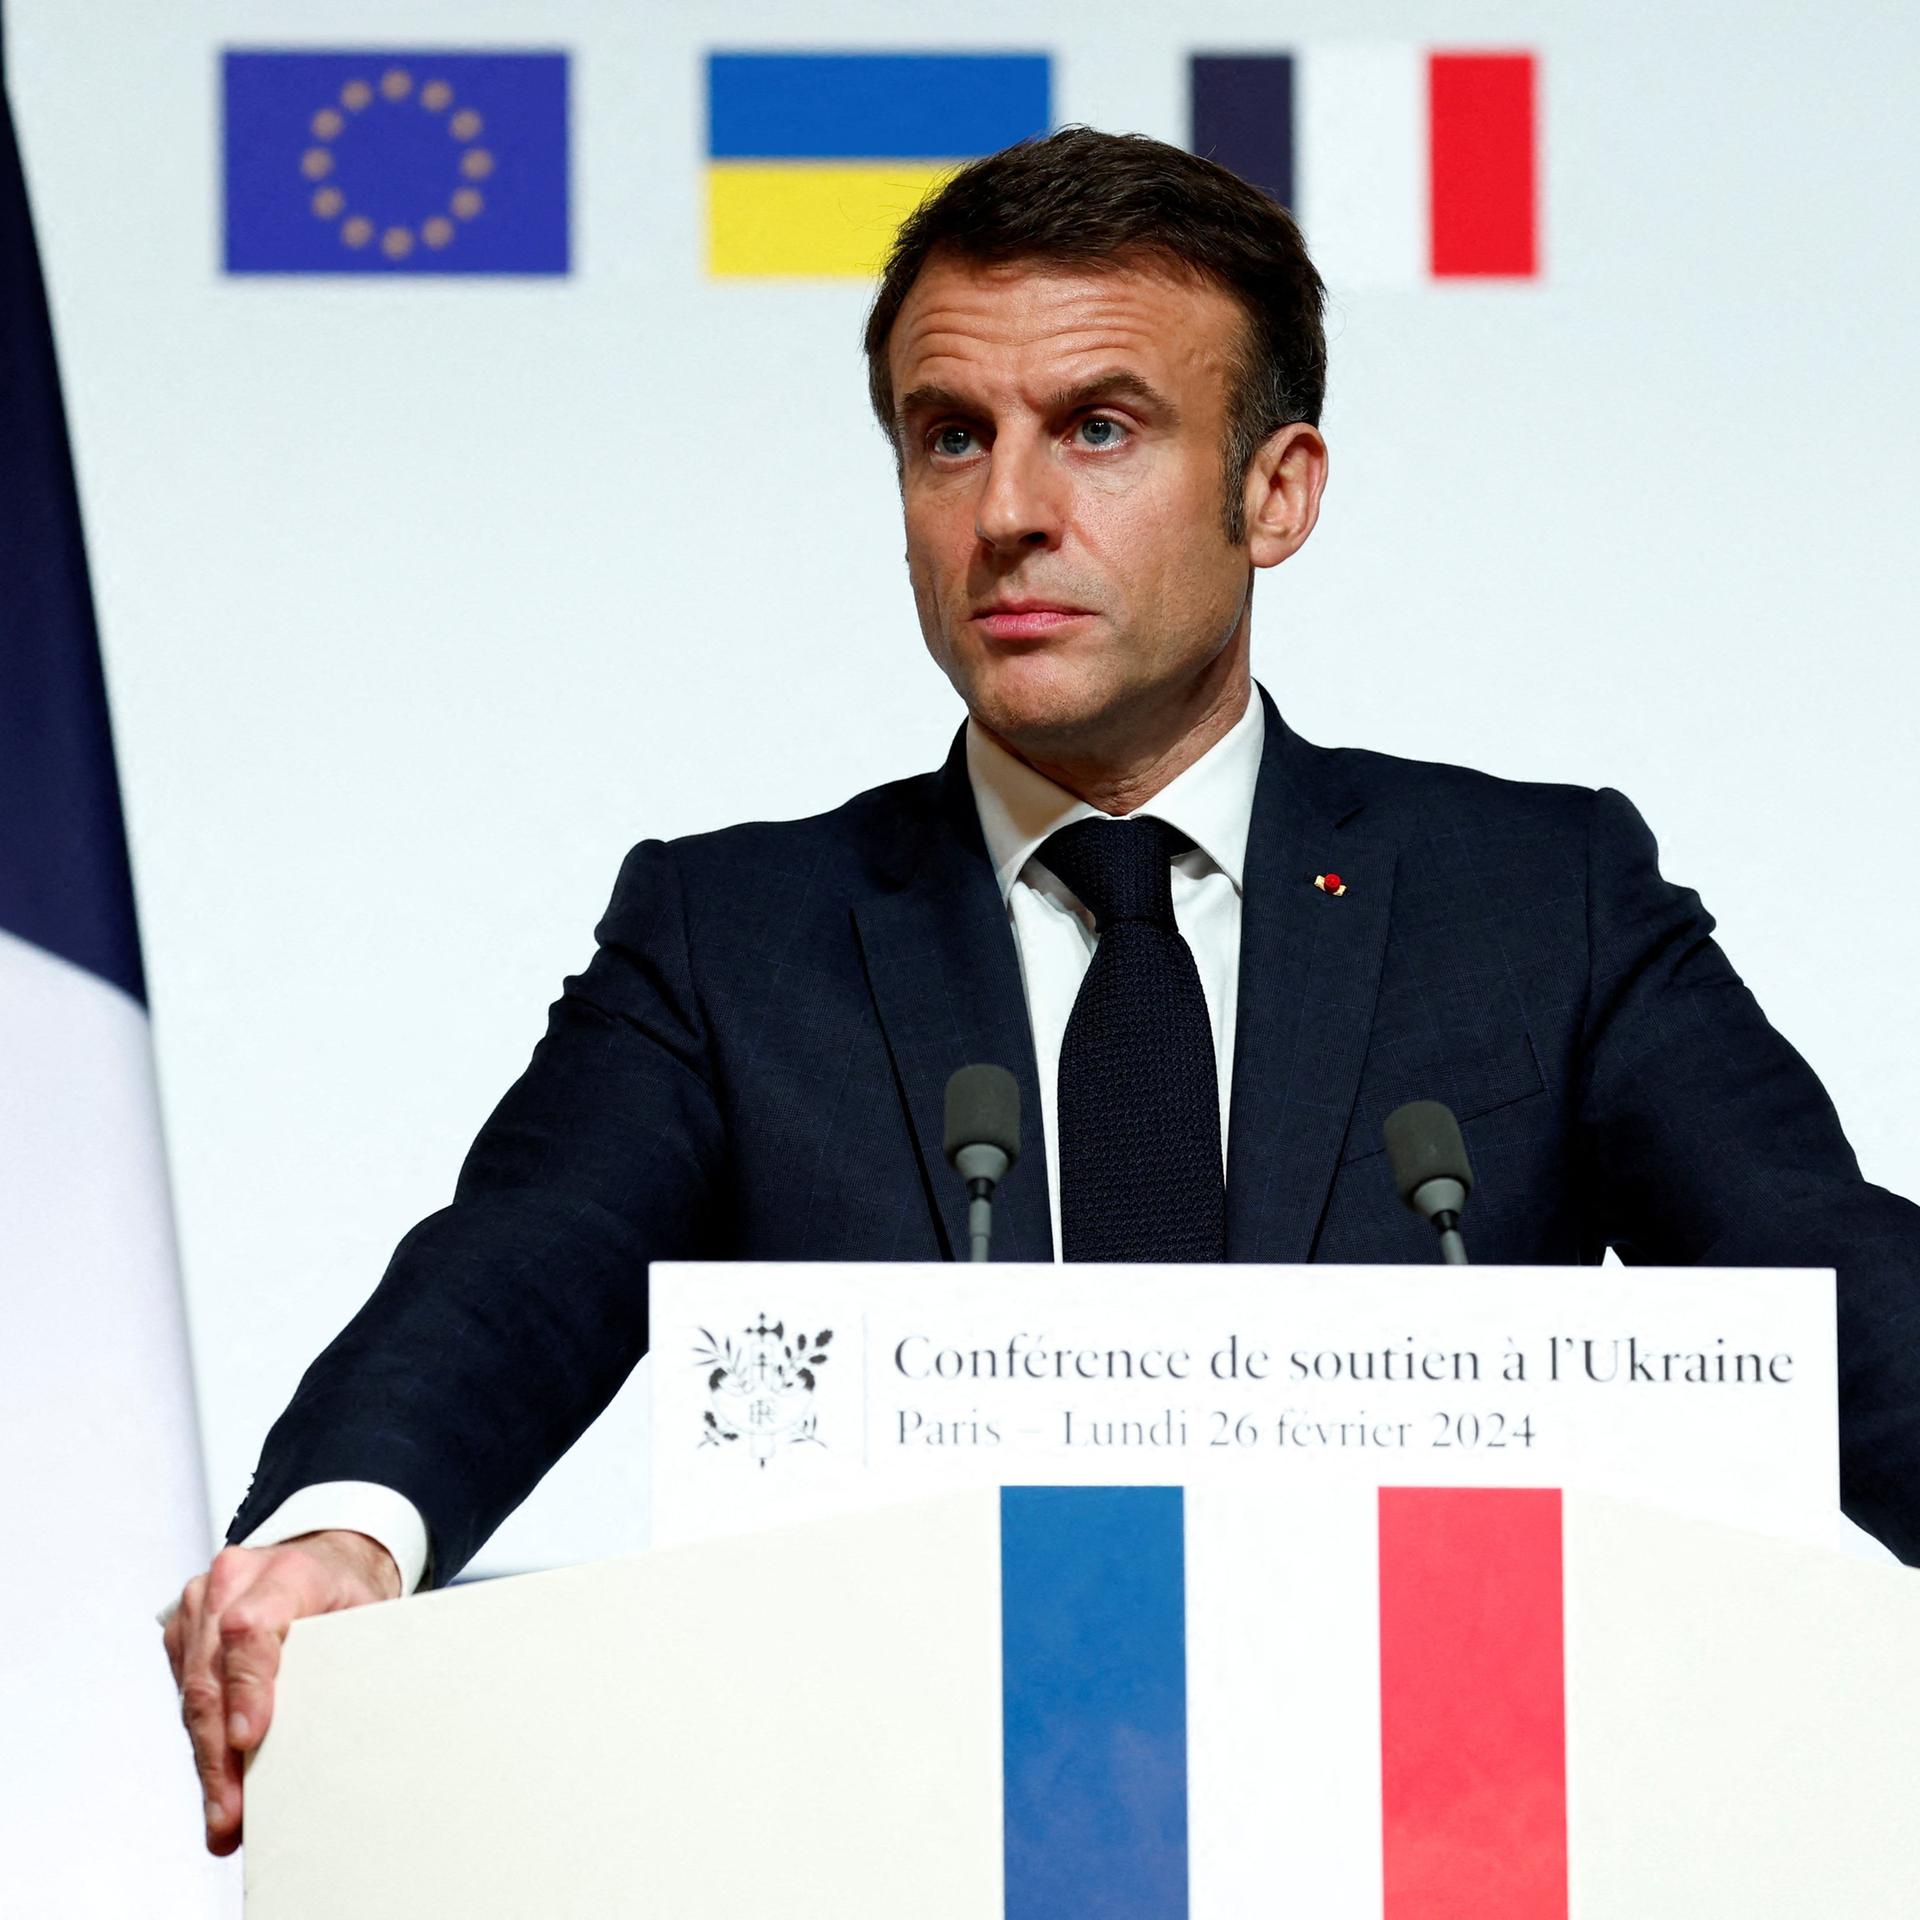 Der Tag - Macron und die Bodentruppen-Frage